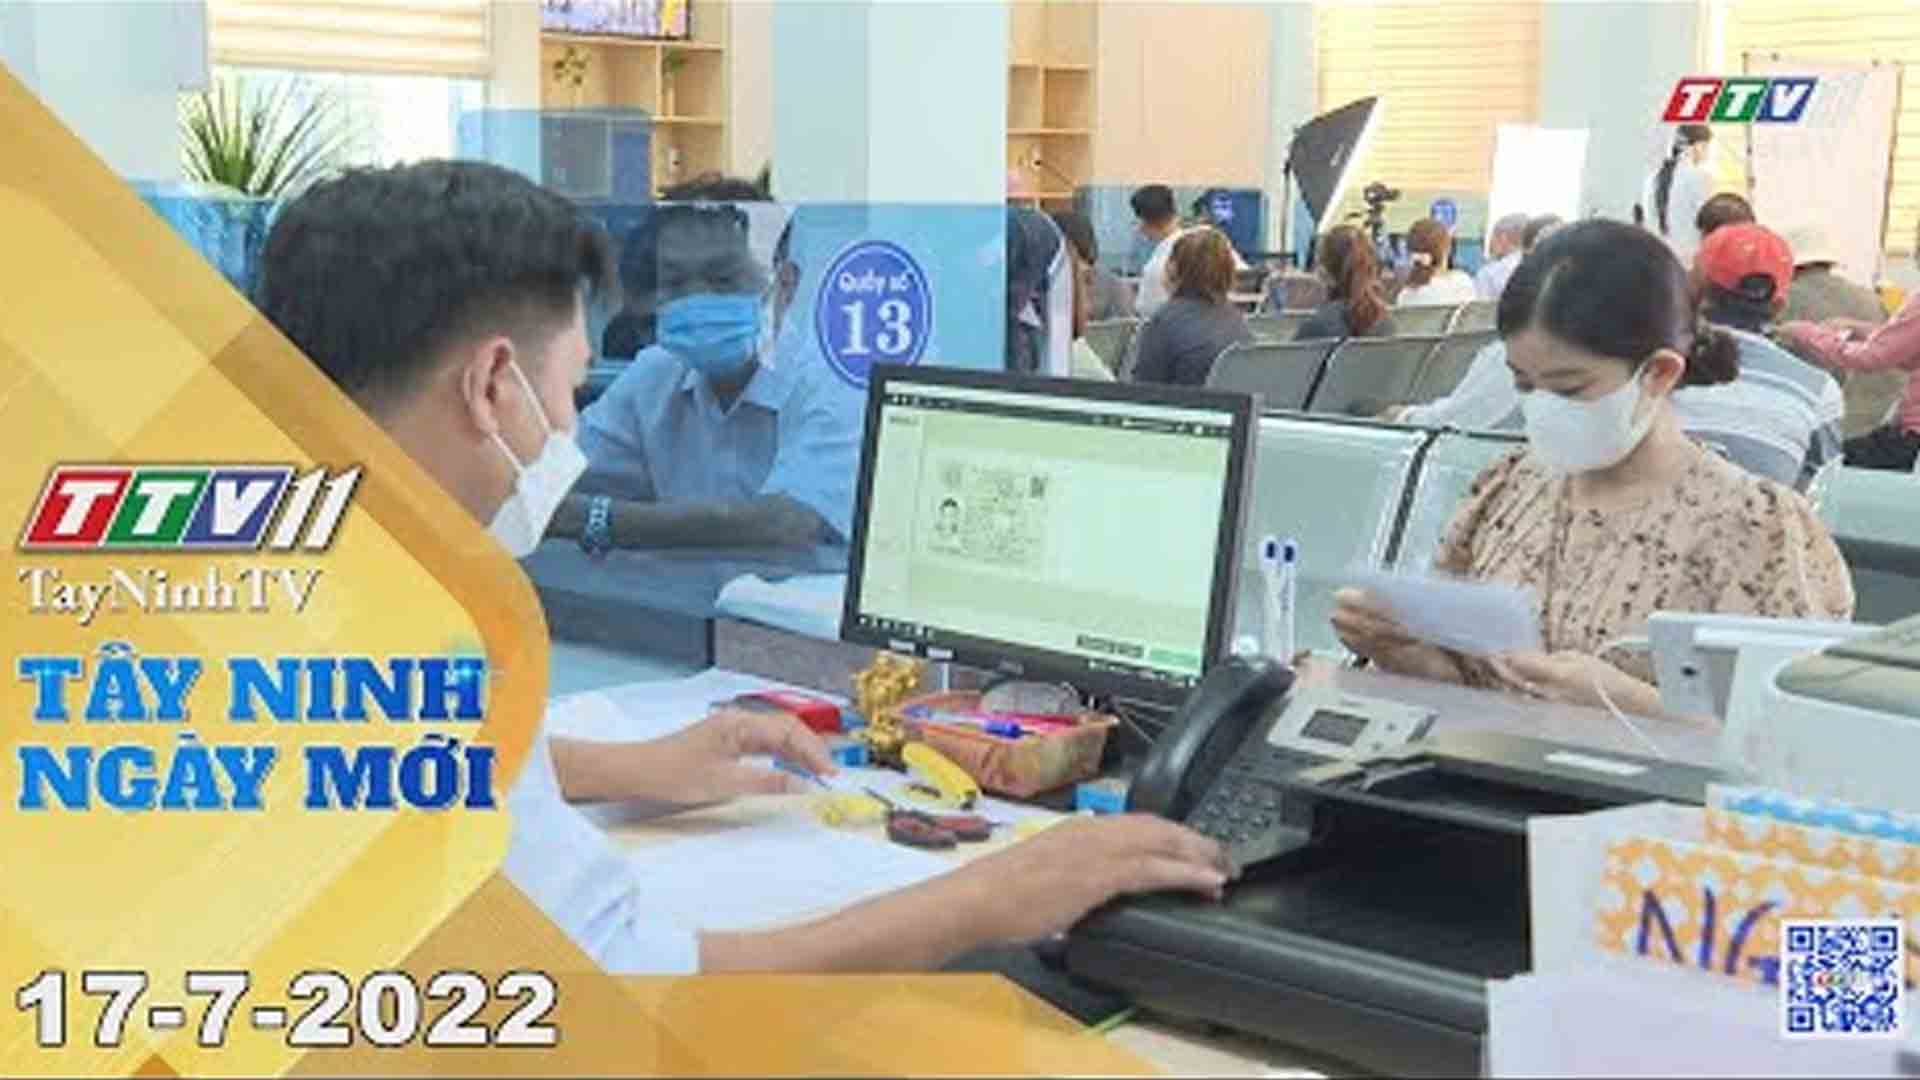 Tây Ninh ngày mới 17-7-2022 | Tin tức hôm nay | TayNinhTV